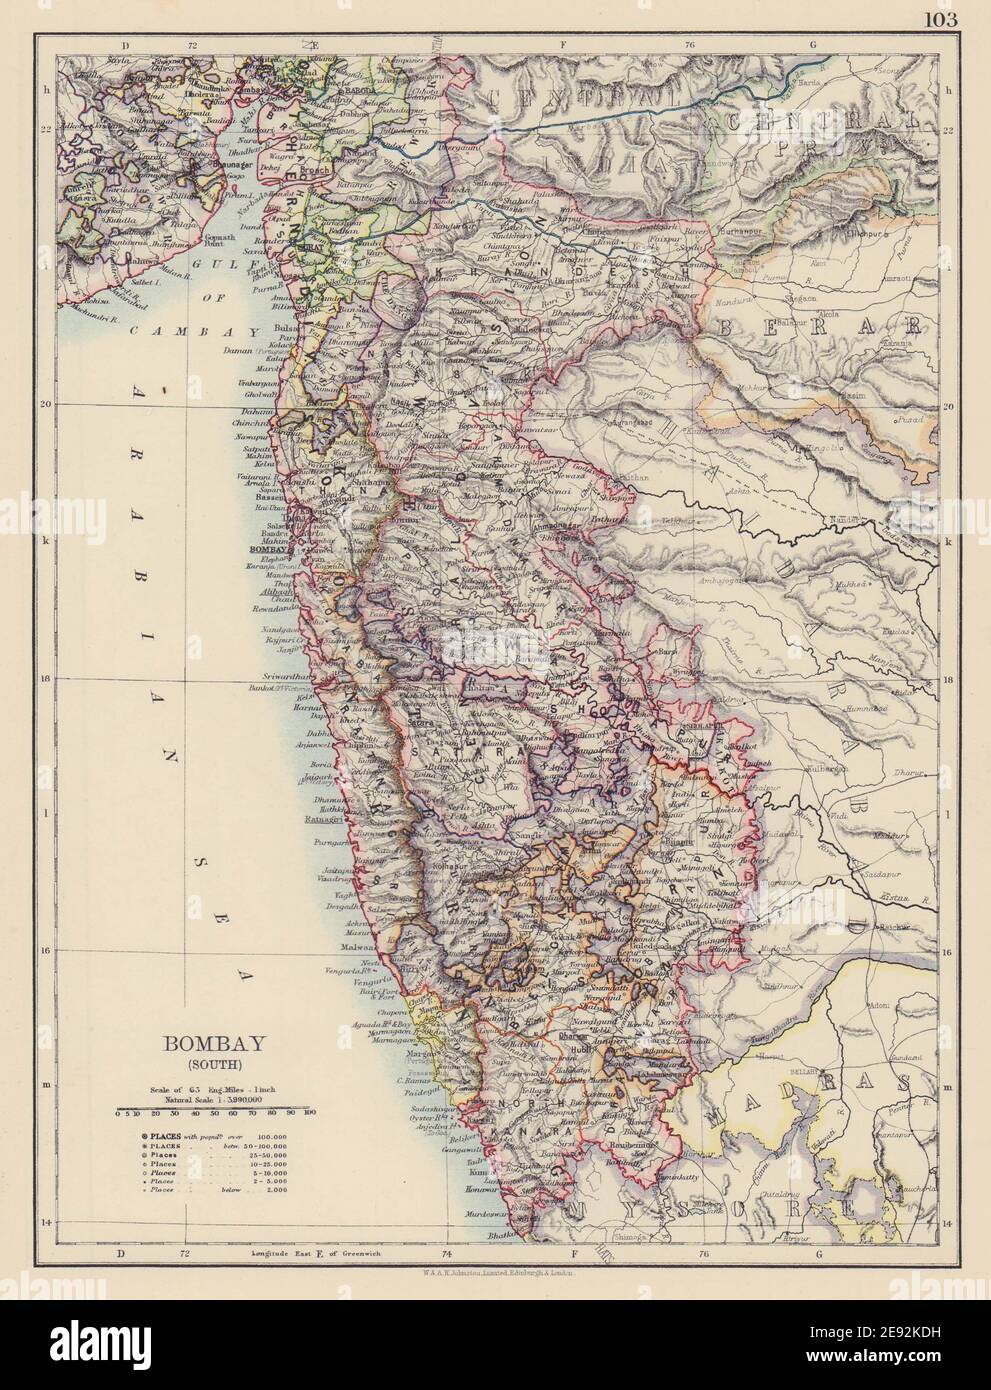 BOMBAY (MUMBAI) (SUD). Inde britannique. Chemins de fer de Maharashtra. CARTE JOHNSTON 1901 Banque D'Images